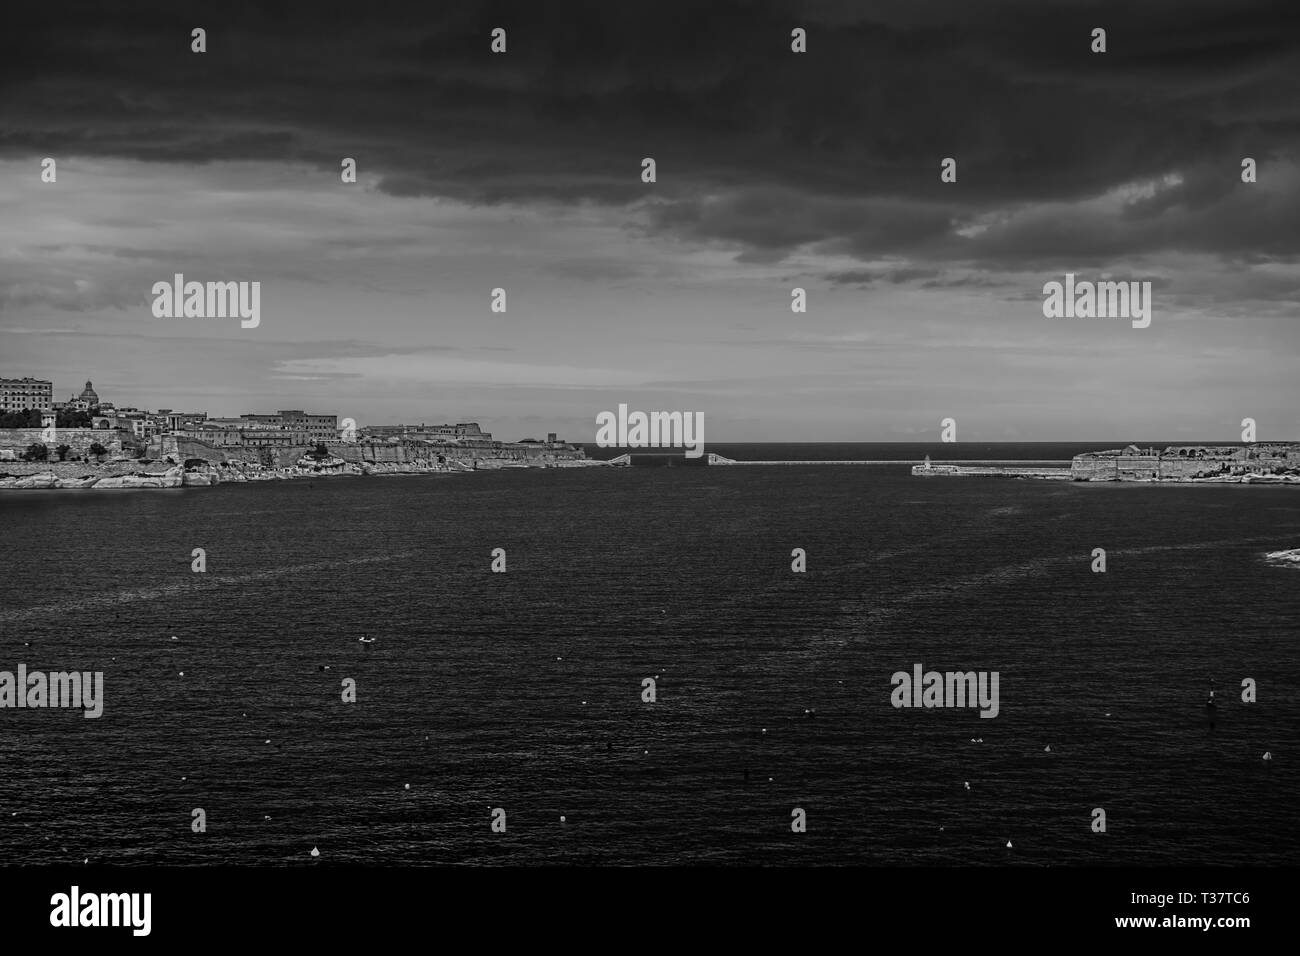 Einen Hafen in Malta in Schwarz und Weiß. Einen eingehenden Sturm auf einem Hafen in Malta in Schwarz und Weiß. Stockfoto